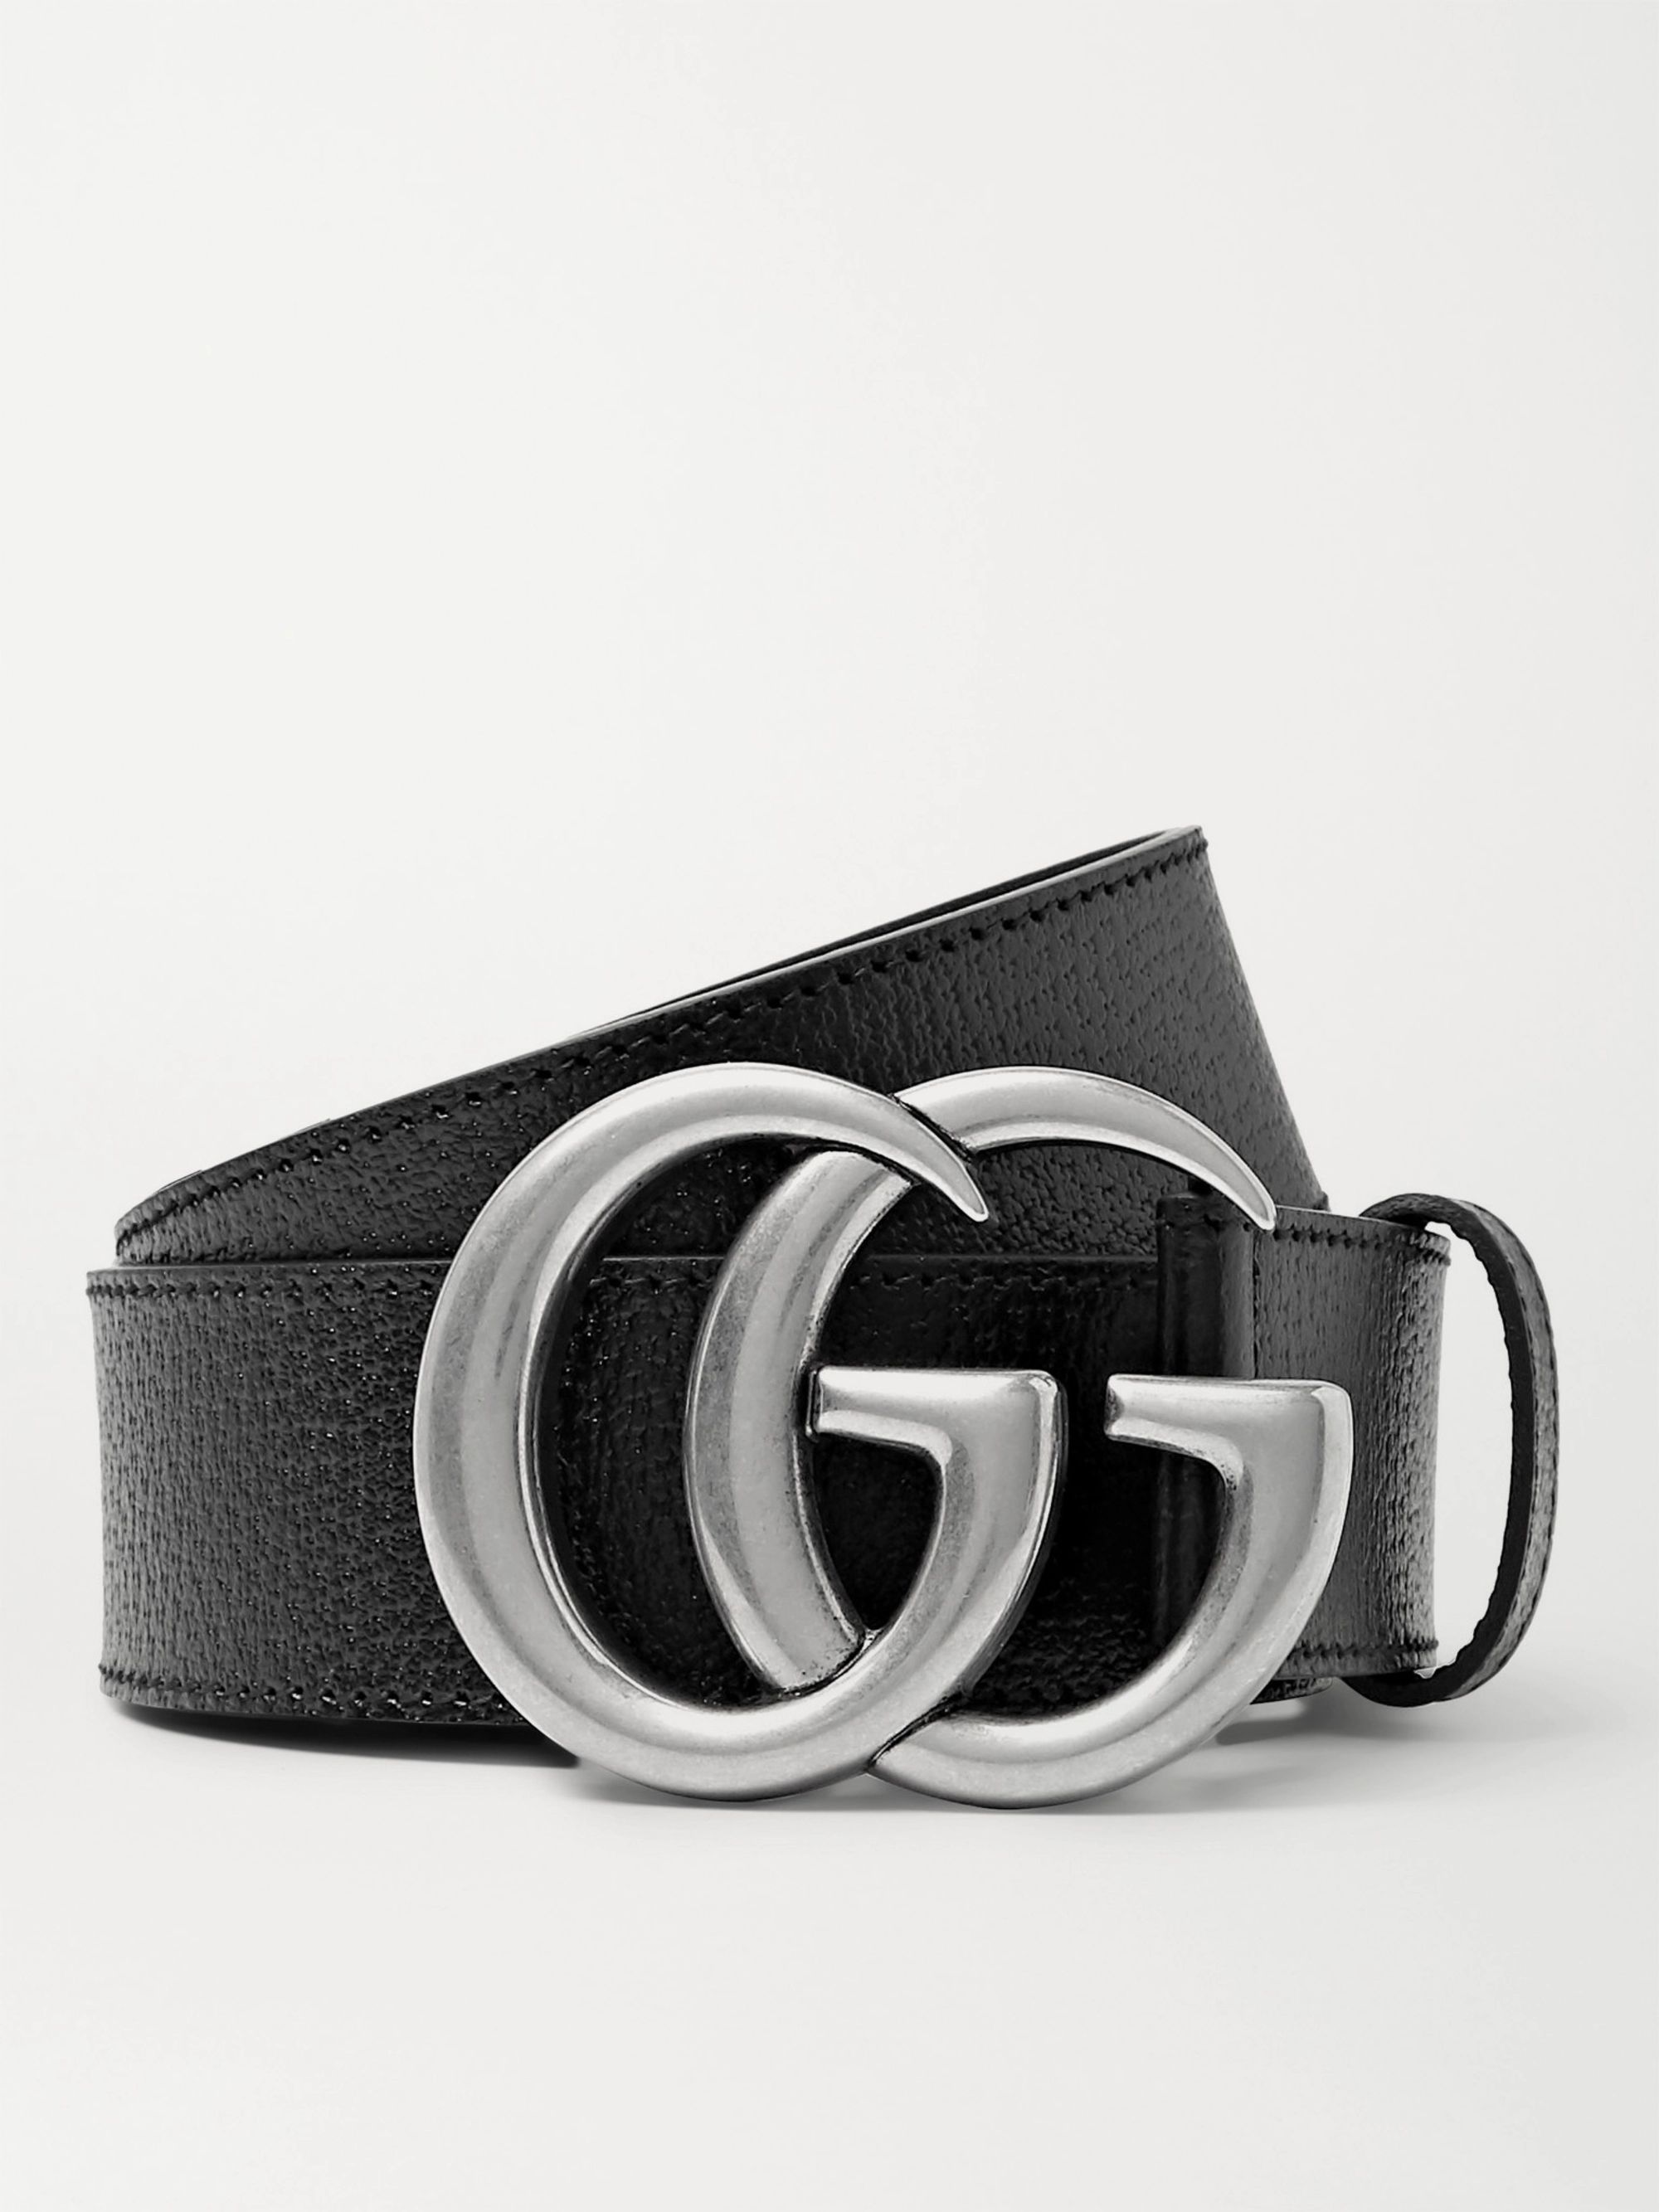 4cm gucci belt